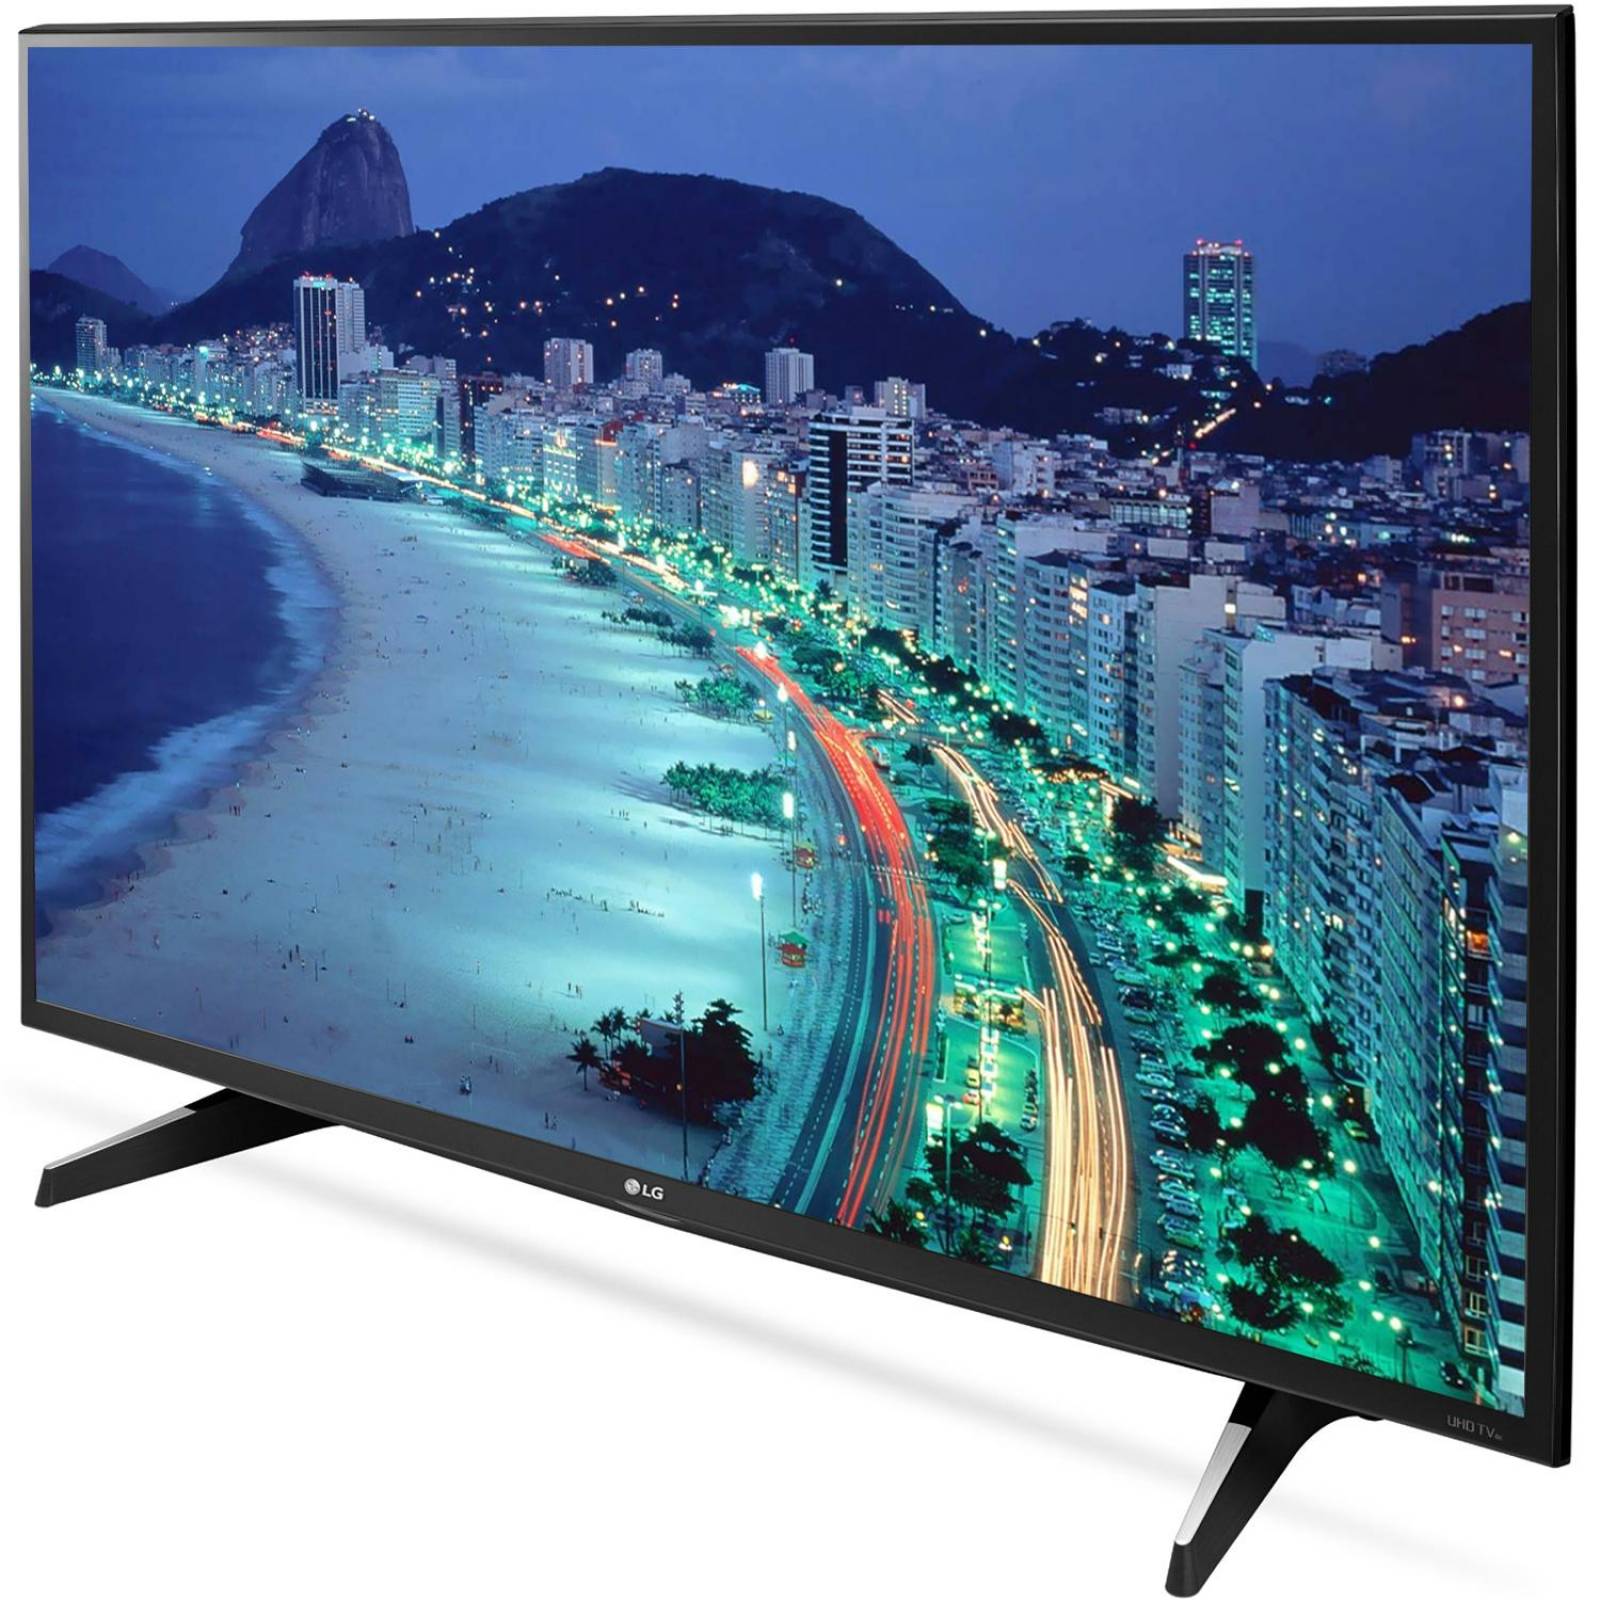 Pantalla 43 Pulgadas LG SmartTV IPS 4K LED HDMI USB 43UH6100 